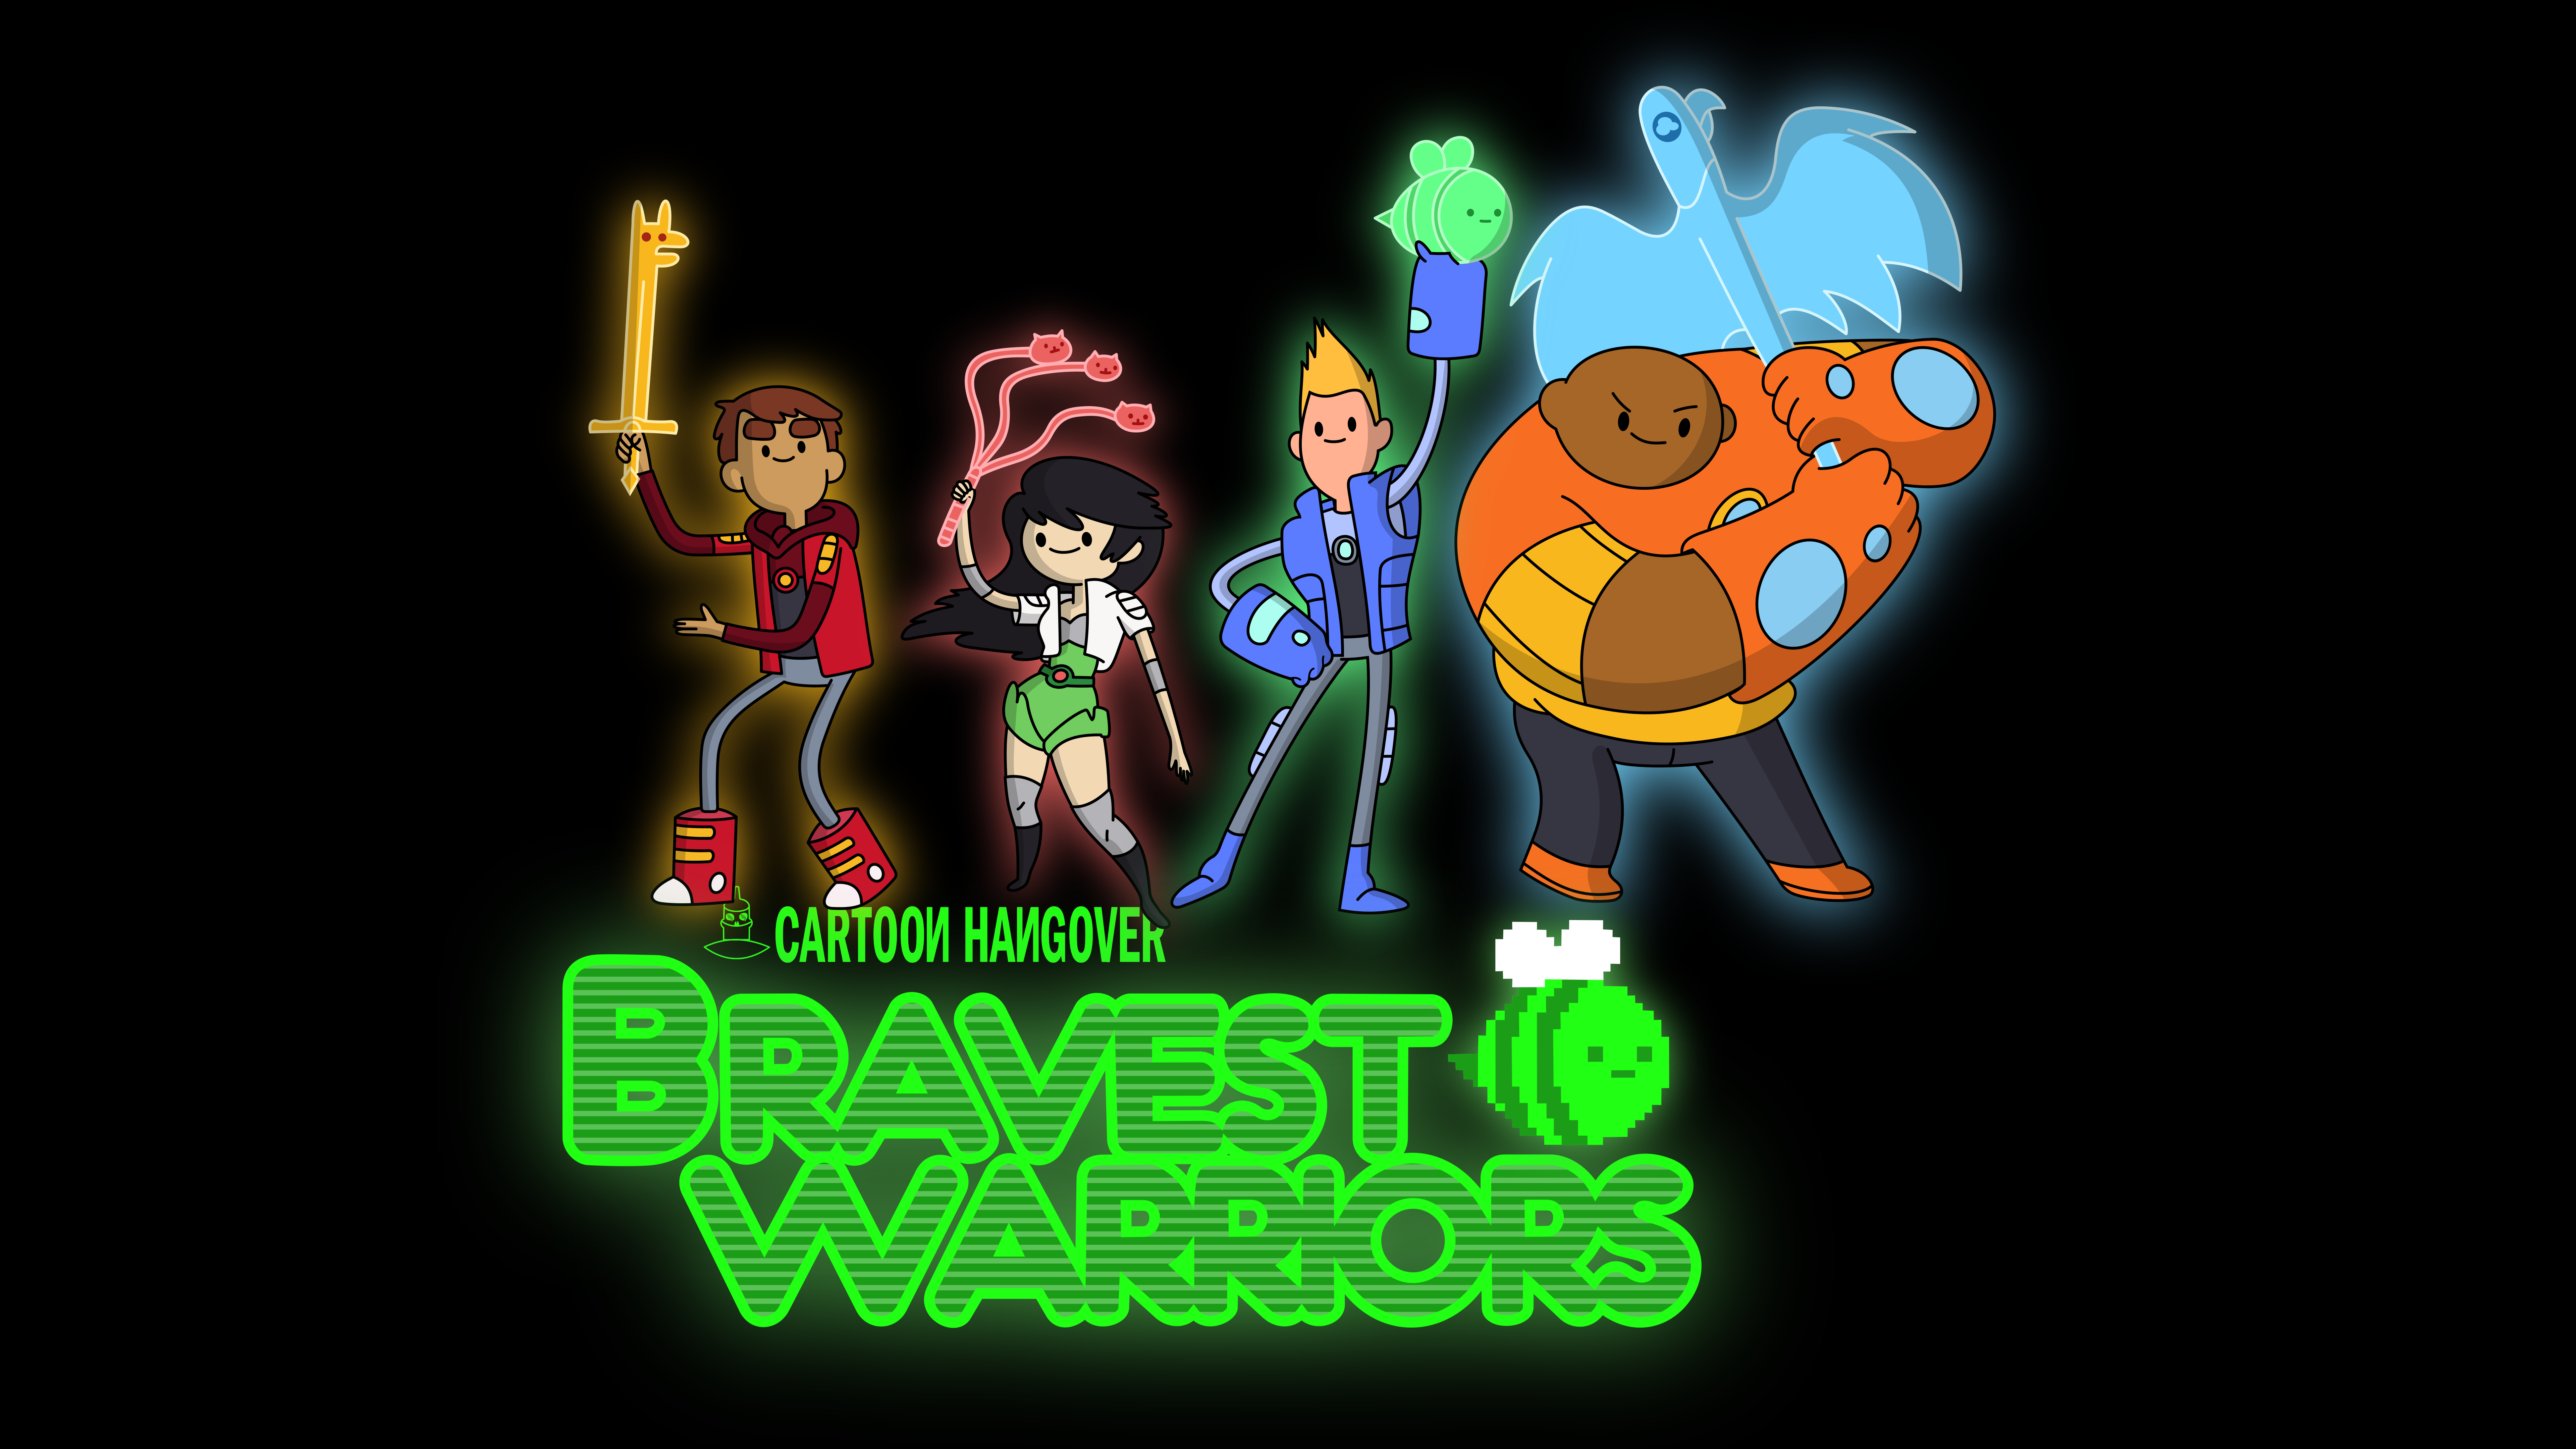 Bravest Warriors by DewlShock